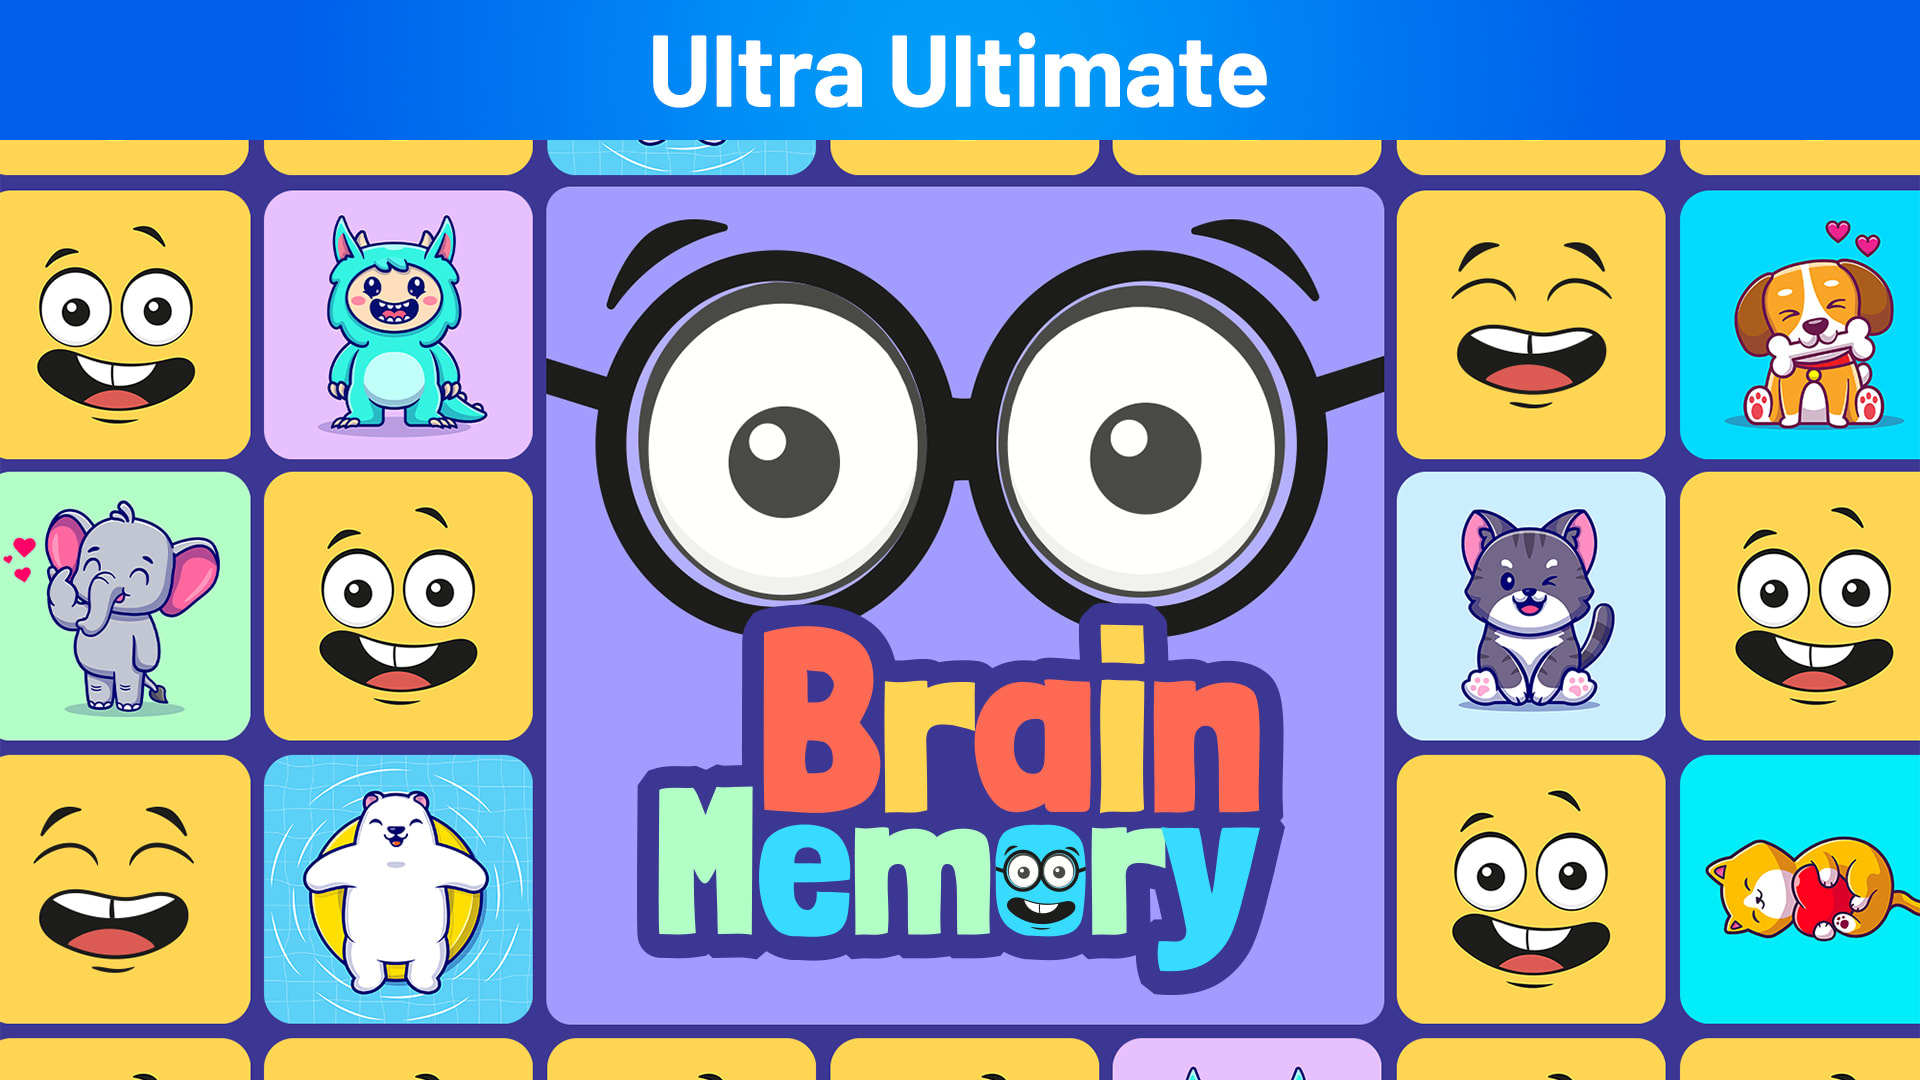 Brain Memory Ultra Ultimate